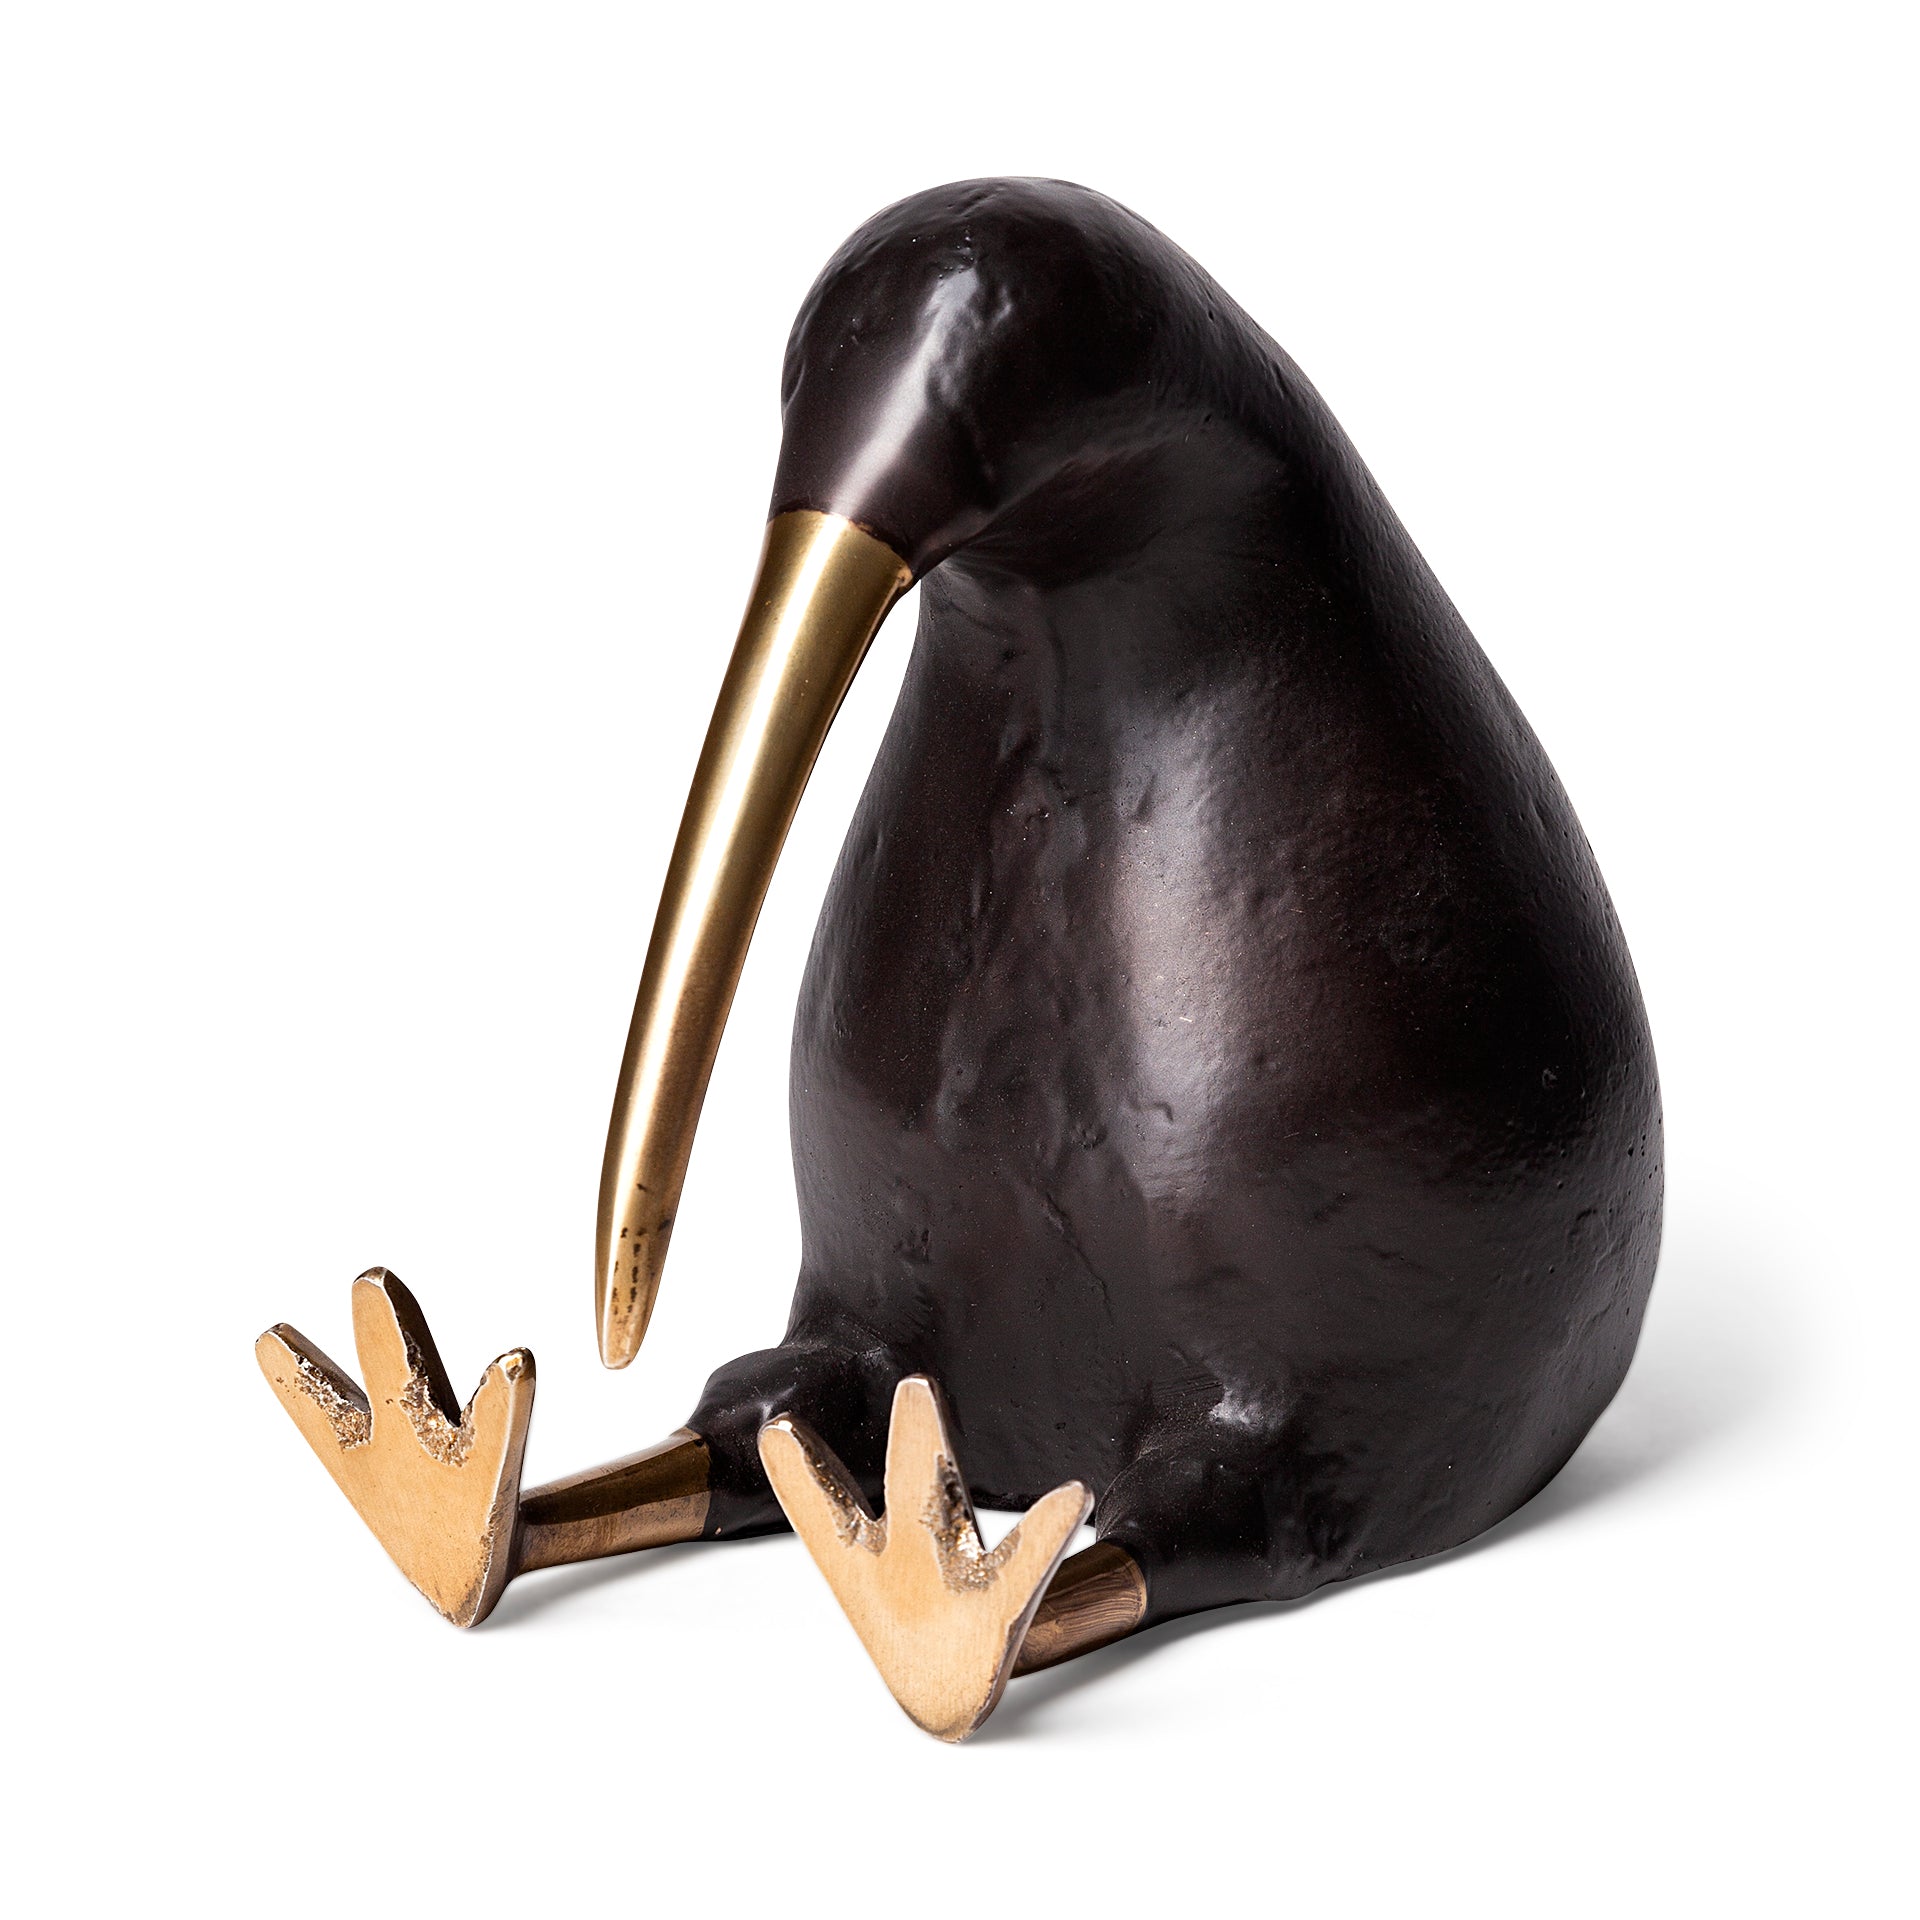 Dodo Sculpture